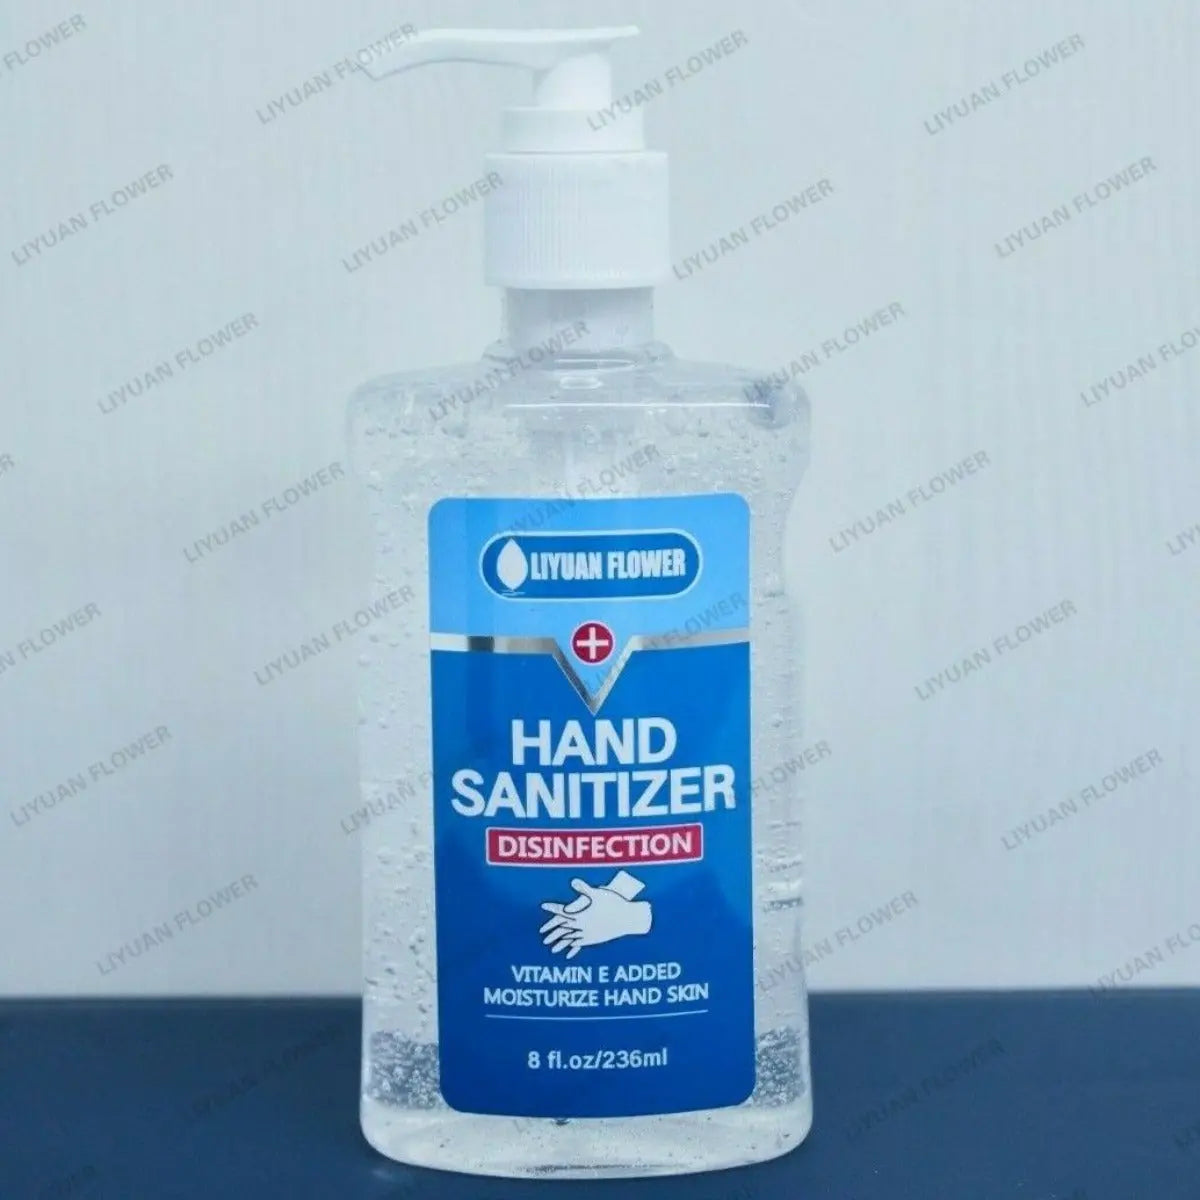 Hand Sanitiser Kills 99.9% Bacteria Leaving Hands Clean, Fresh & Safe